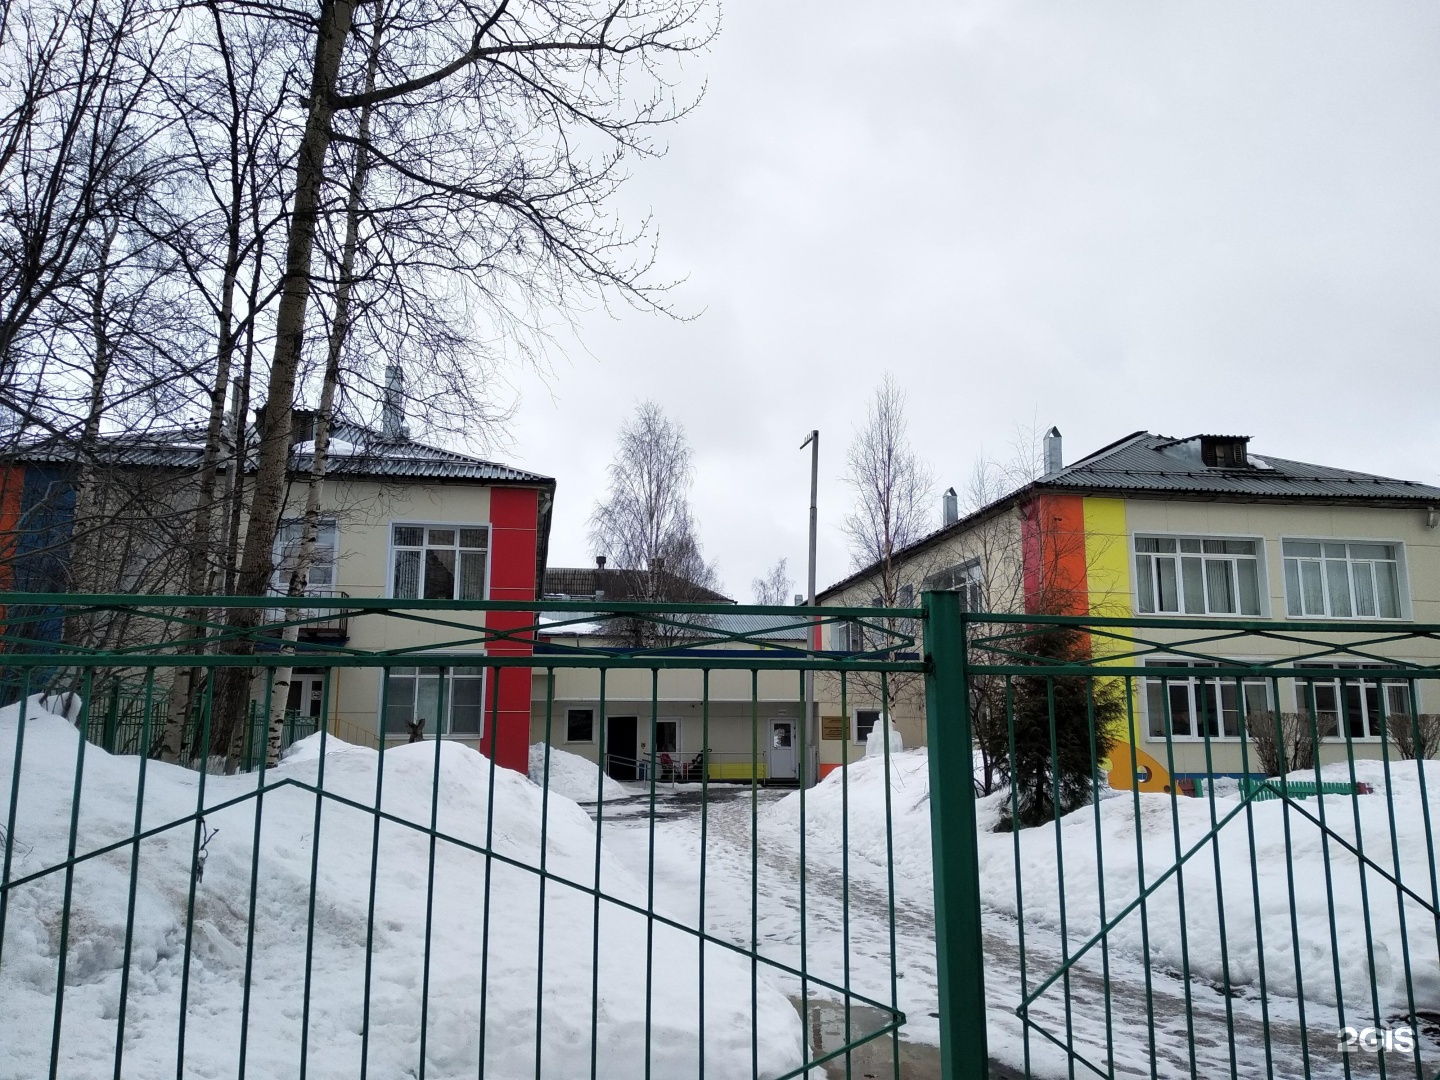 специализированный дом ребенка 2 ярославль фото здания